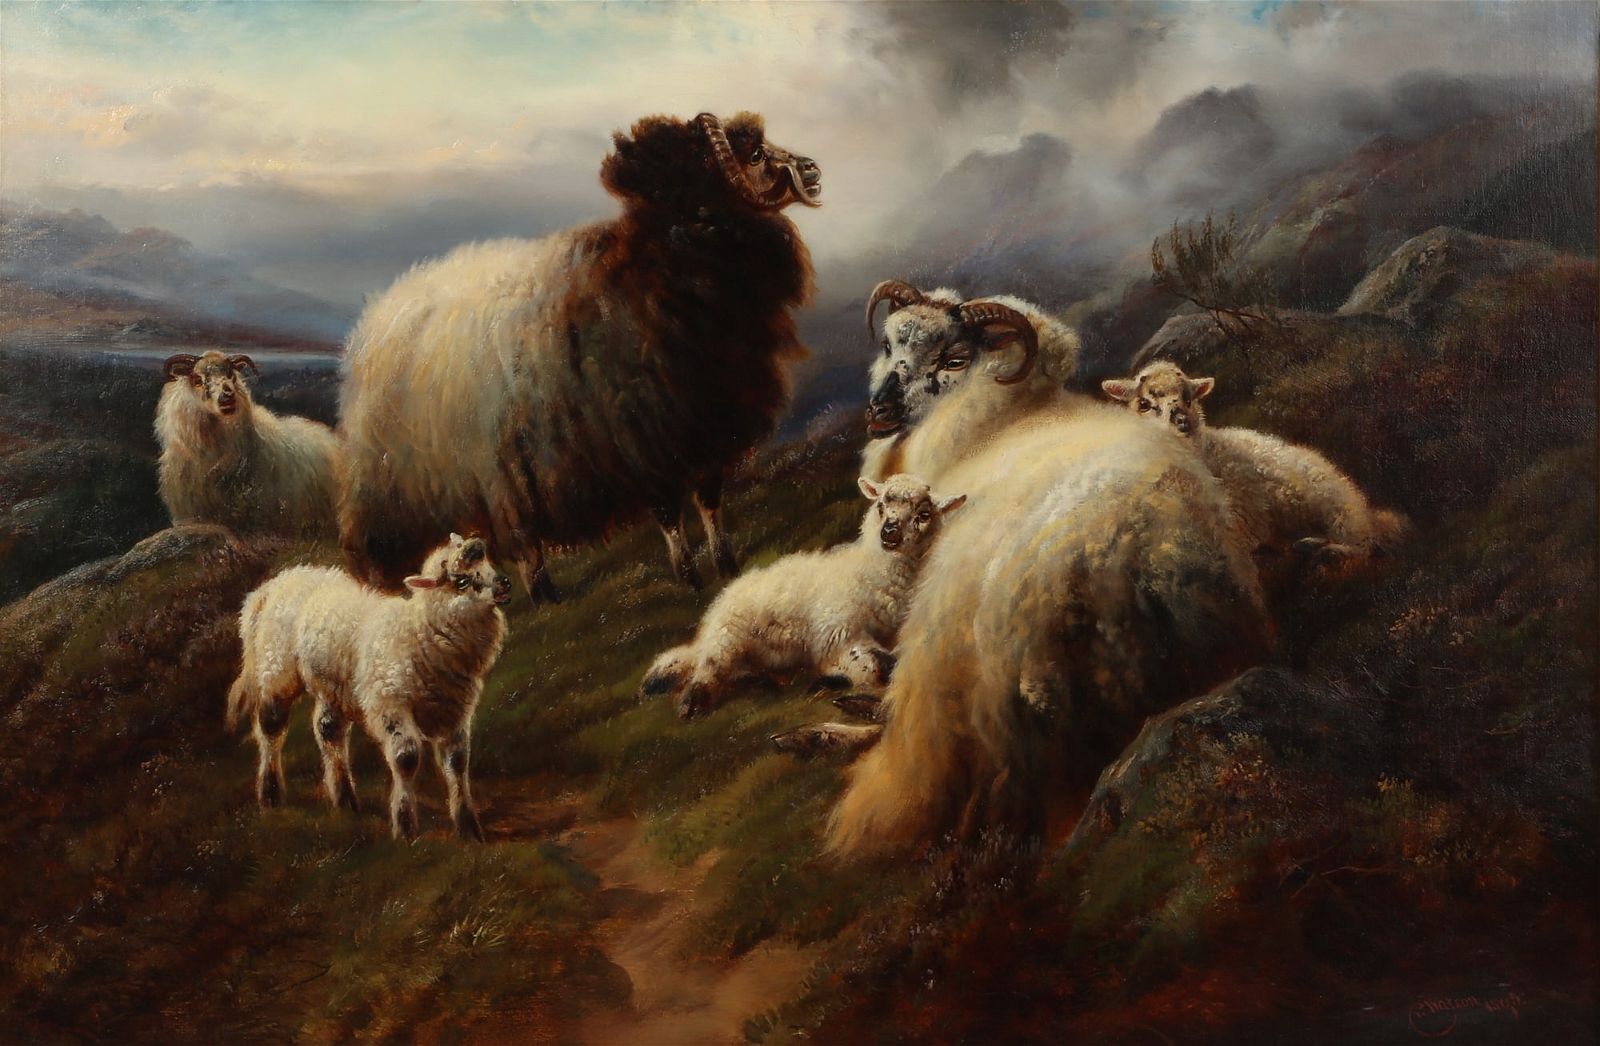 ROBERT WATSON, SHEEP IN THE HIGHLANDSRobert